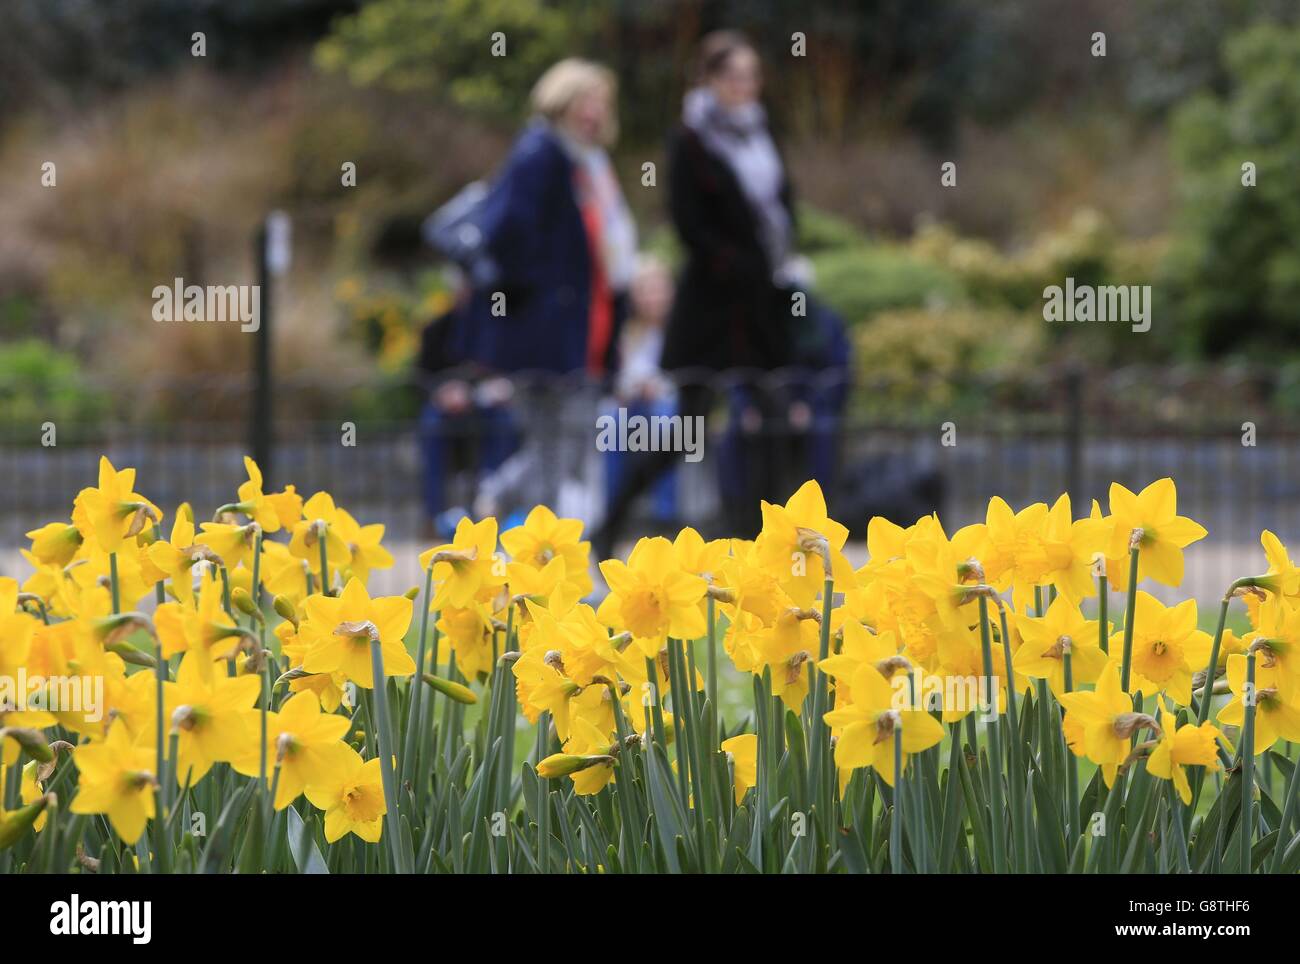 Les visiteurs se prominent devant les jonquilles dans le parc St. James's, Londres. Banque D'Images